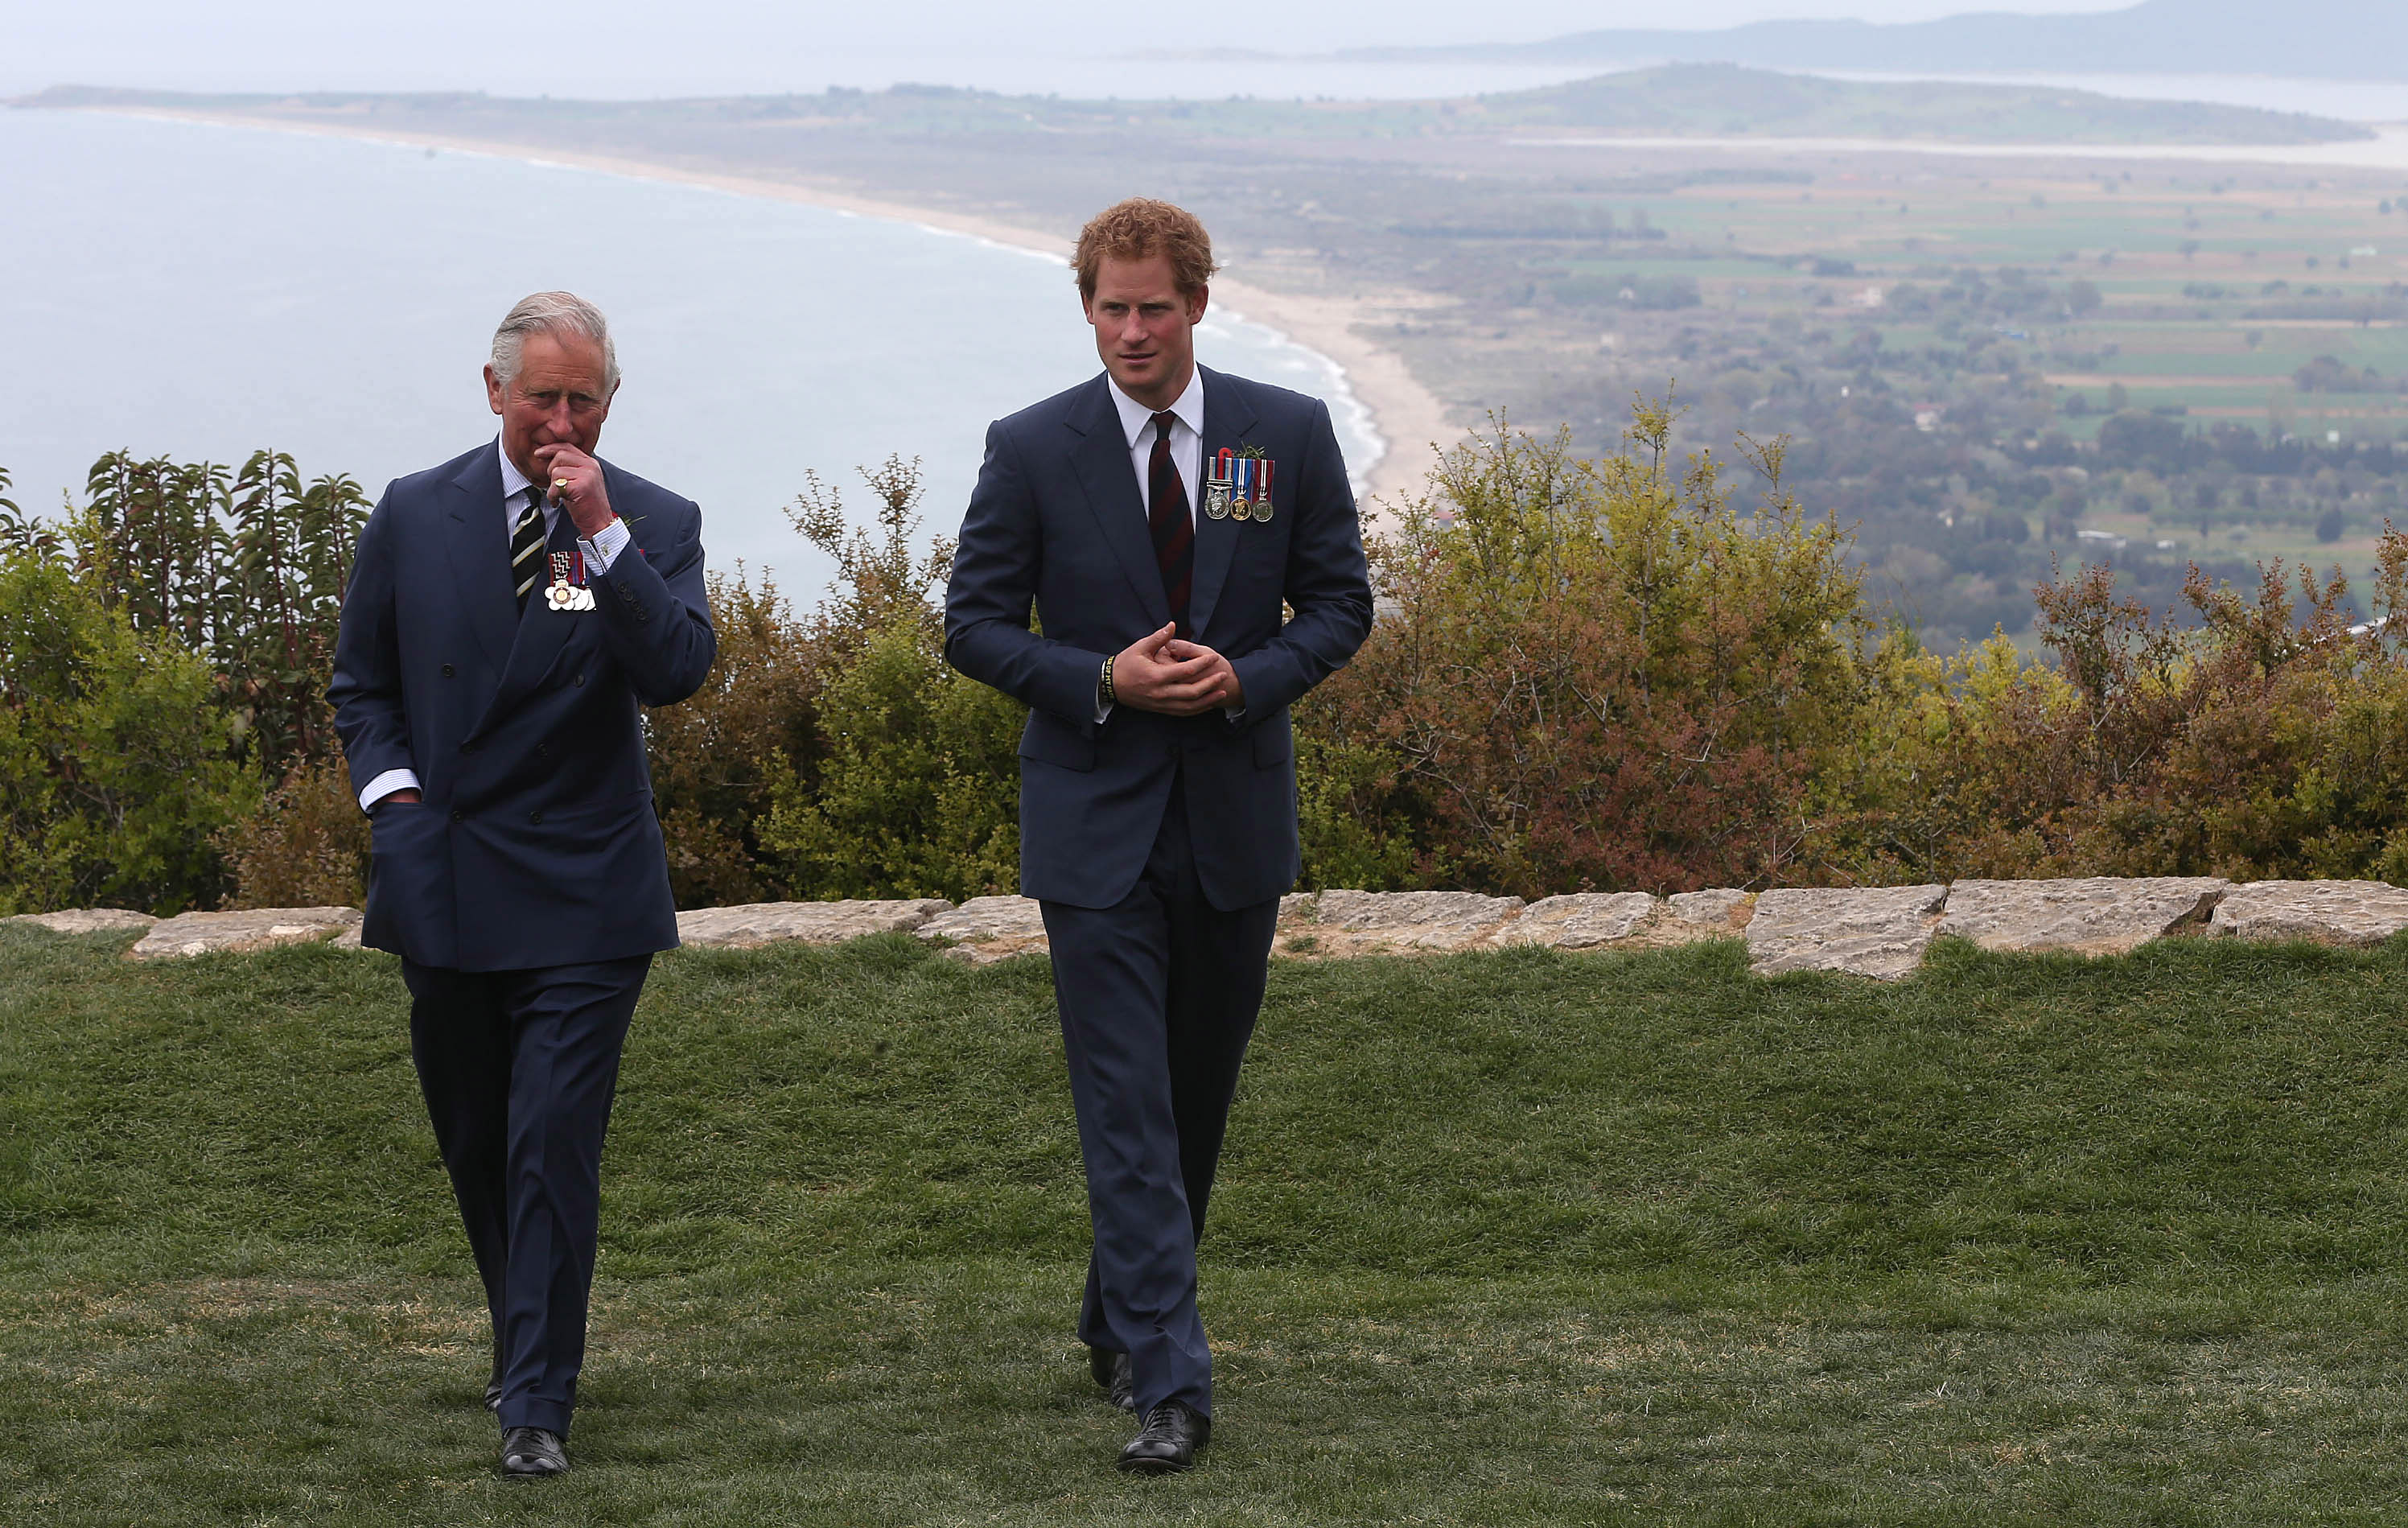 El rey Charles III y el príncipe Harry charlan durante el acto del centenario de la Batalla de Gallipoli en Gallipoli, Turquía, el 25 de abril de 2015 | Fuente: Getty Images